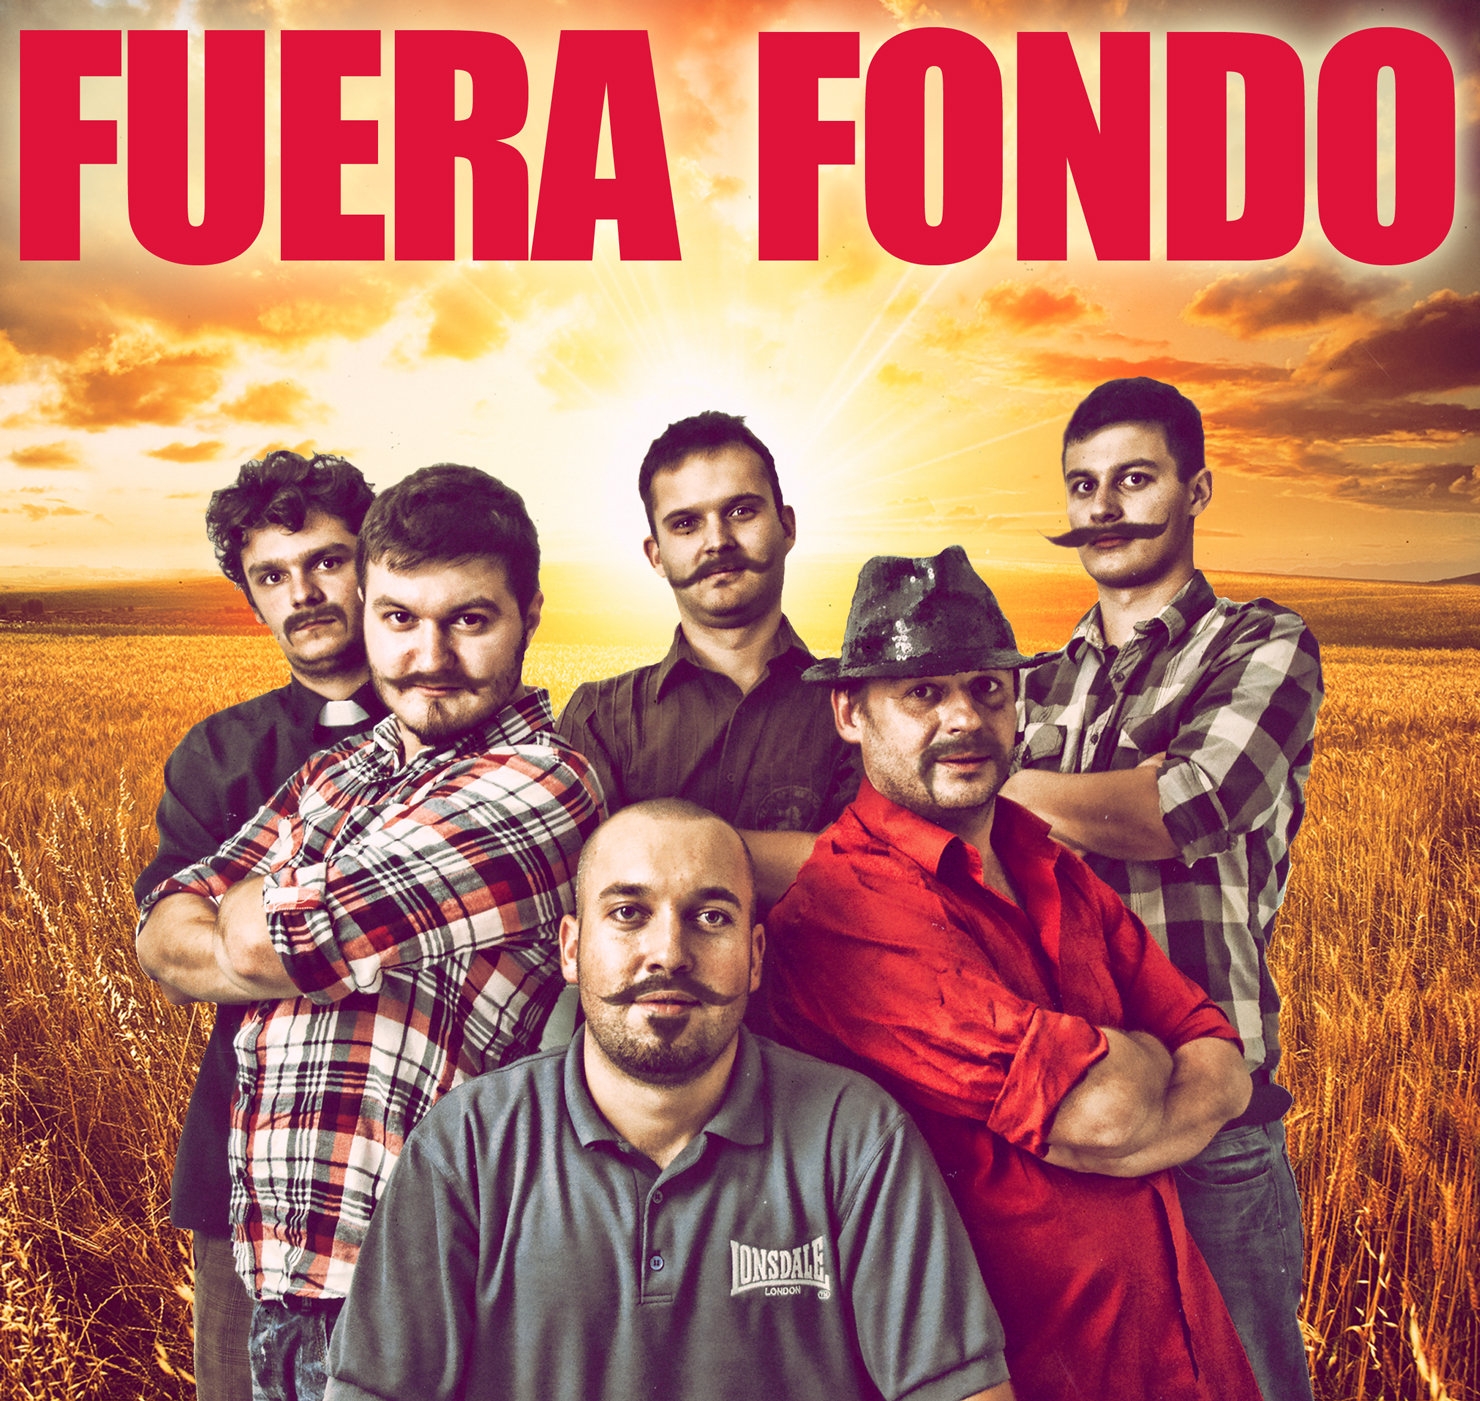 Fuera Fondo (źródło: materiały prasowe organizatora)